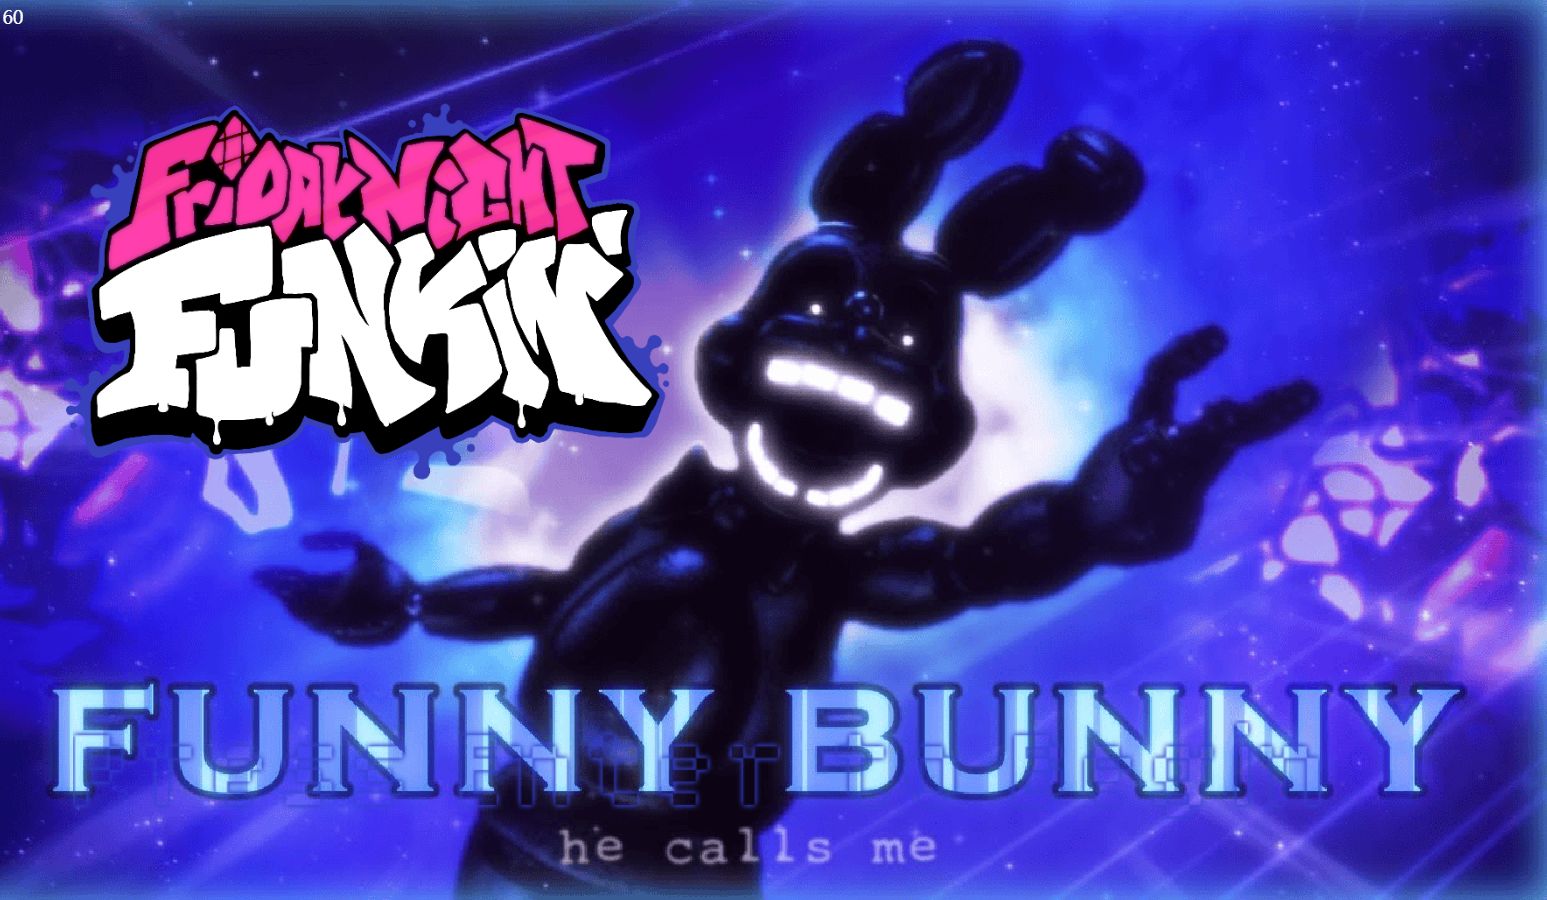 【fnf/fnaf】幻影邦尼 funny bunny – silly billy but shadow